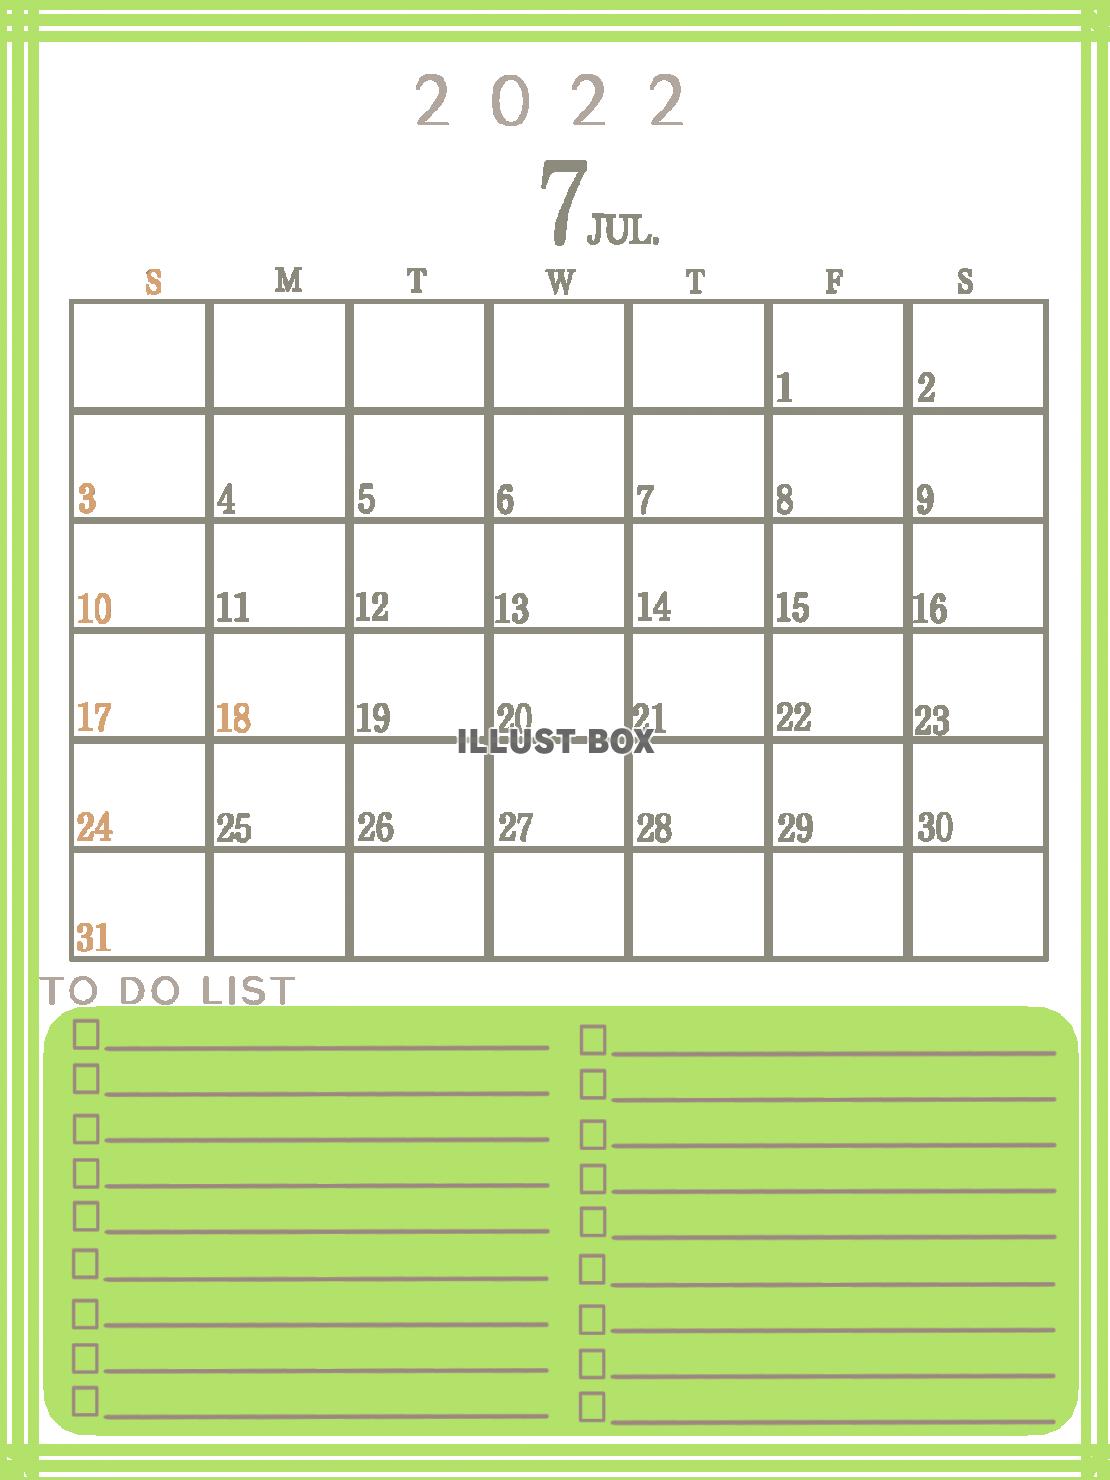 二〇二二年　TODOリストのあるシンプルなカレンダー（7月）